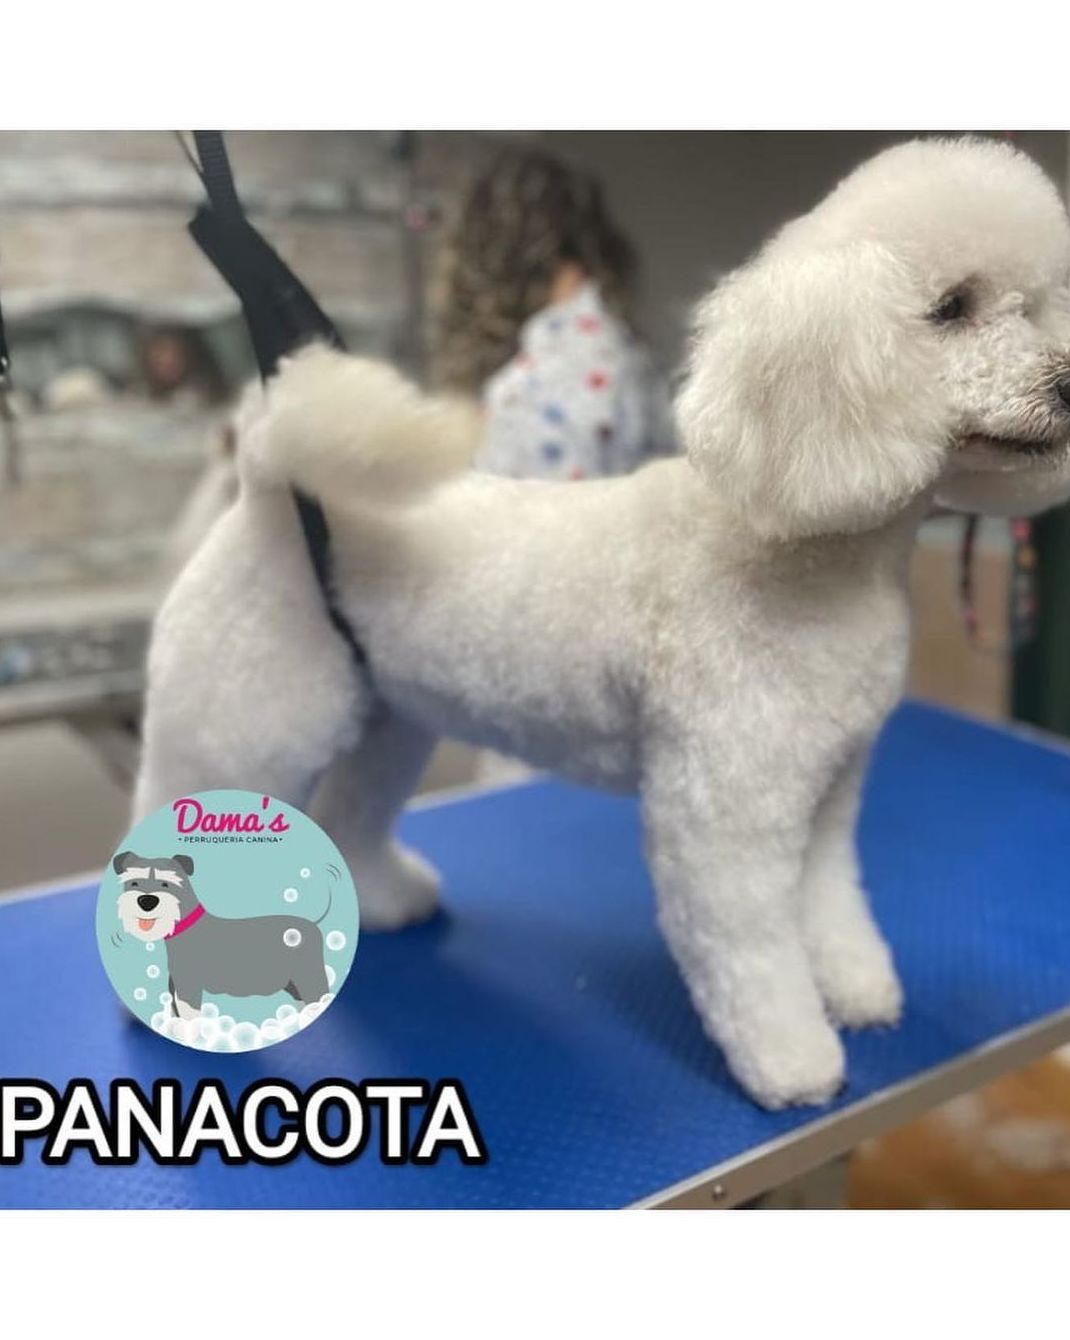 Foto 83 de Peluquería canina con todo tipo de tratamientos para tu mascota en  | Dama's